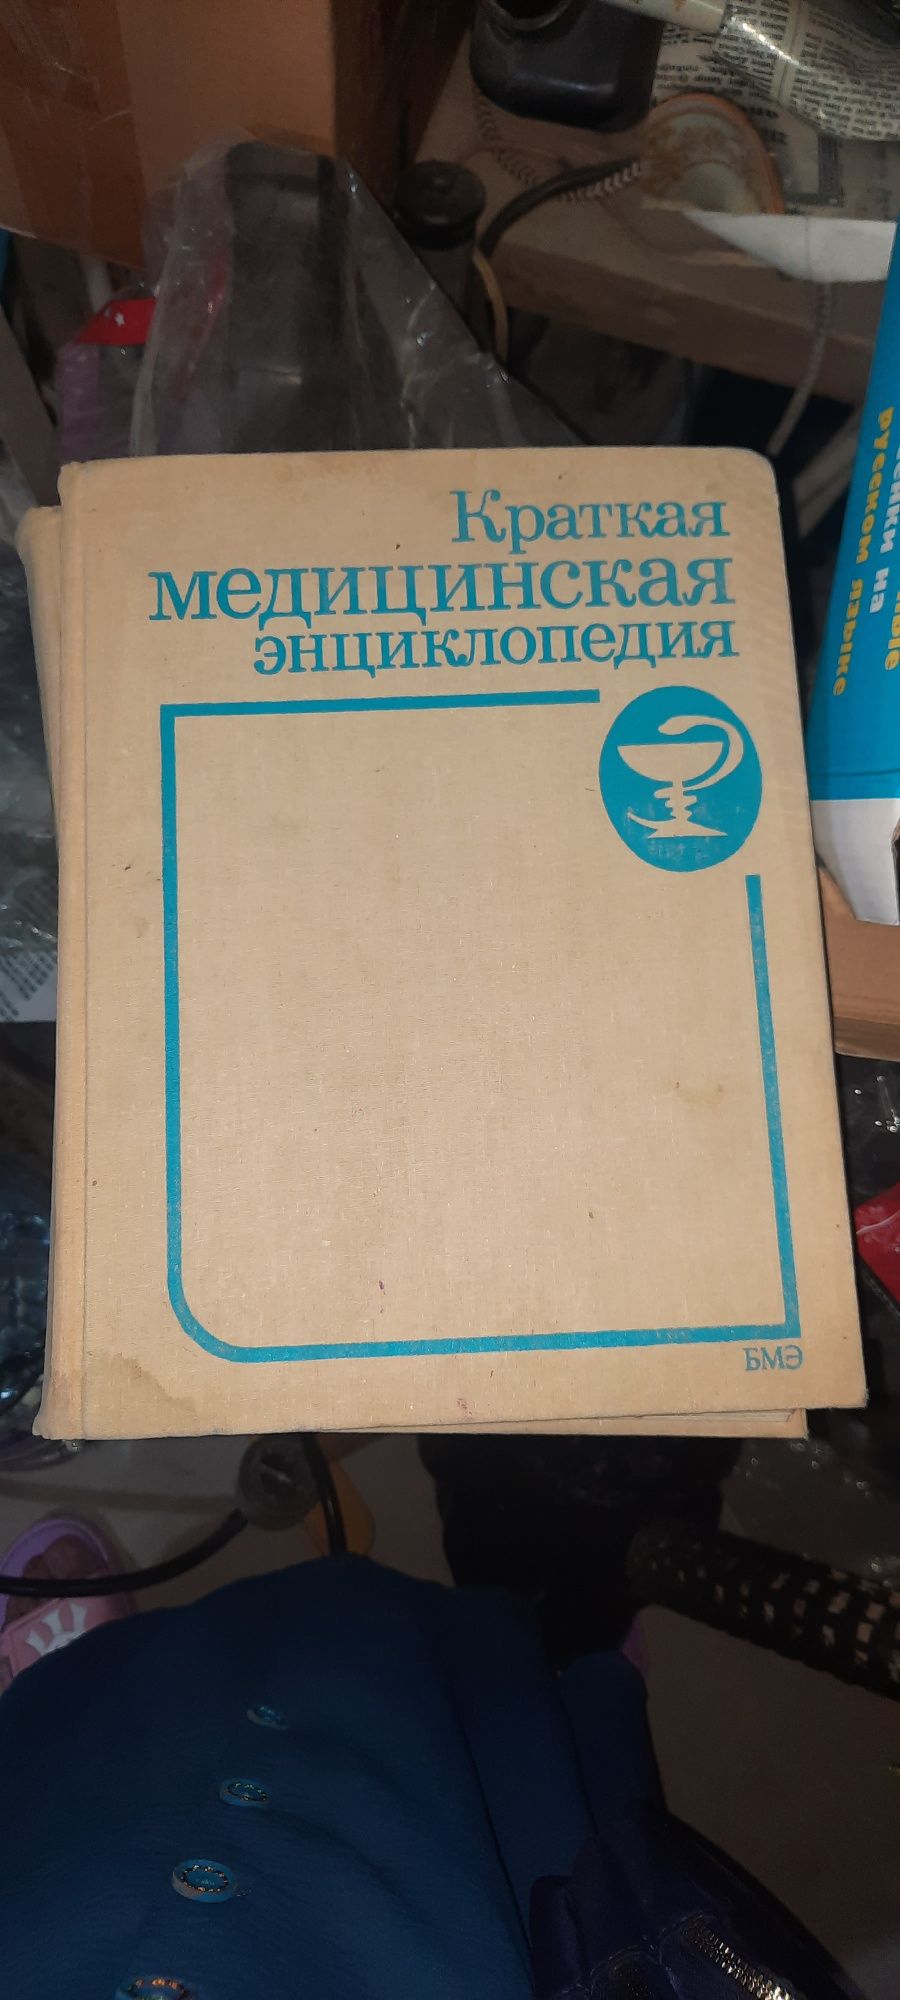 Медицинская энциклопедия 3 томов